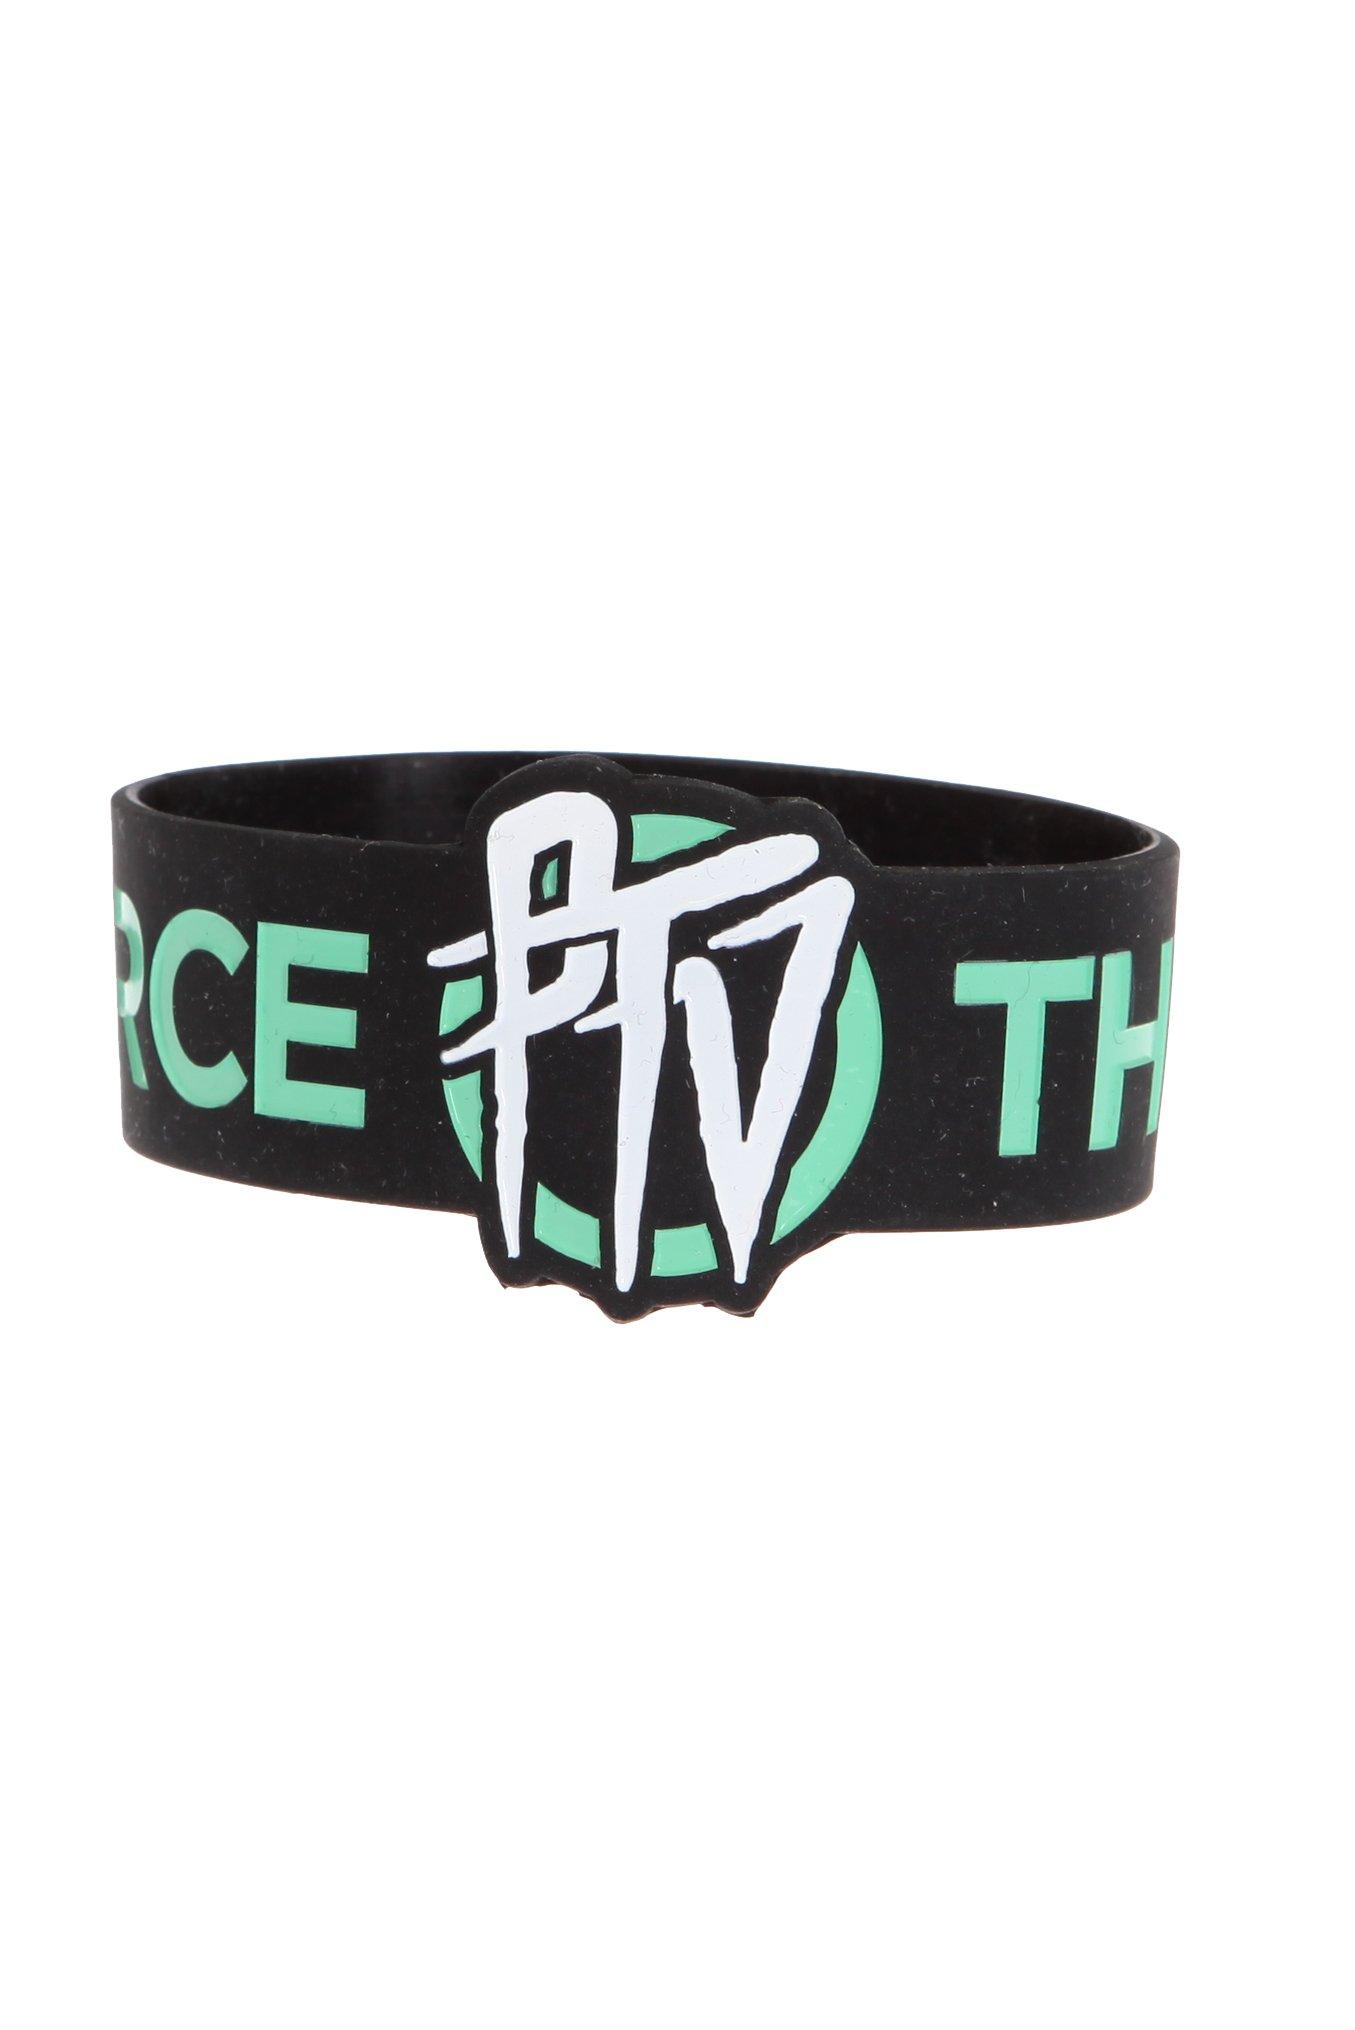 Pierce The Veil PTV Rubber Bracelet, , hi-res